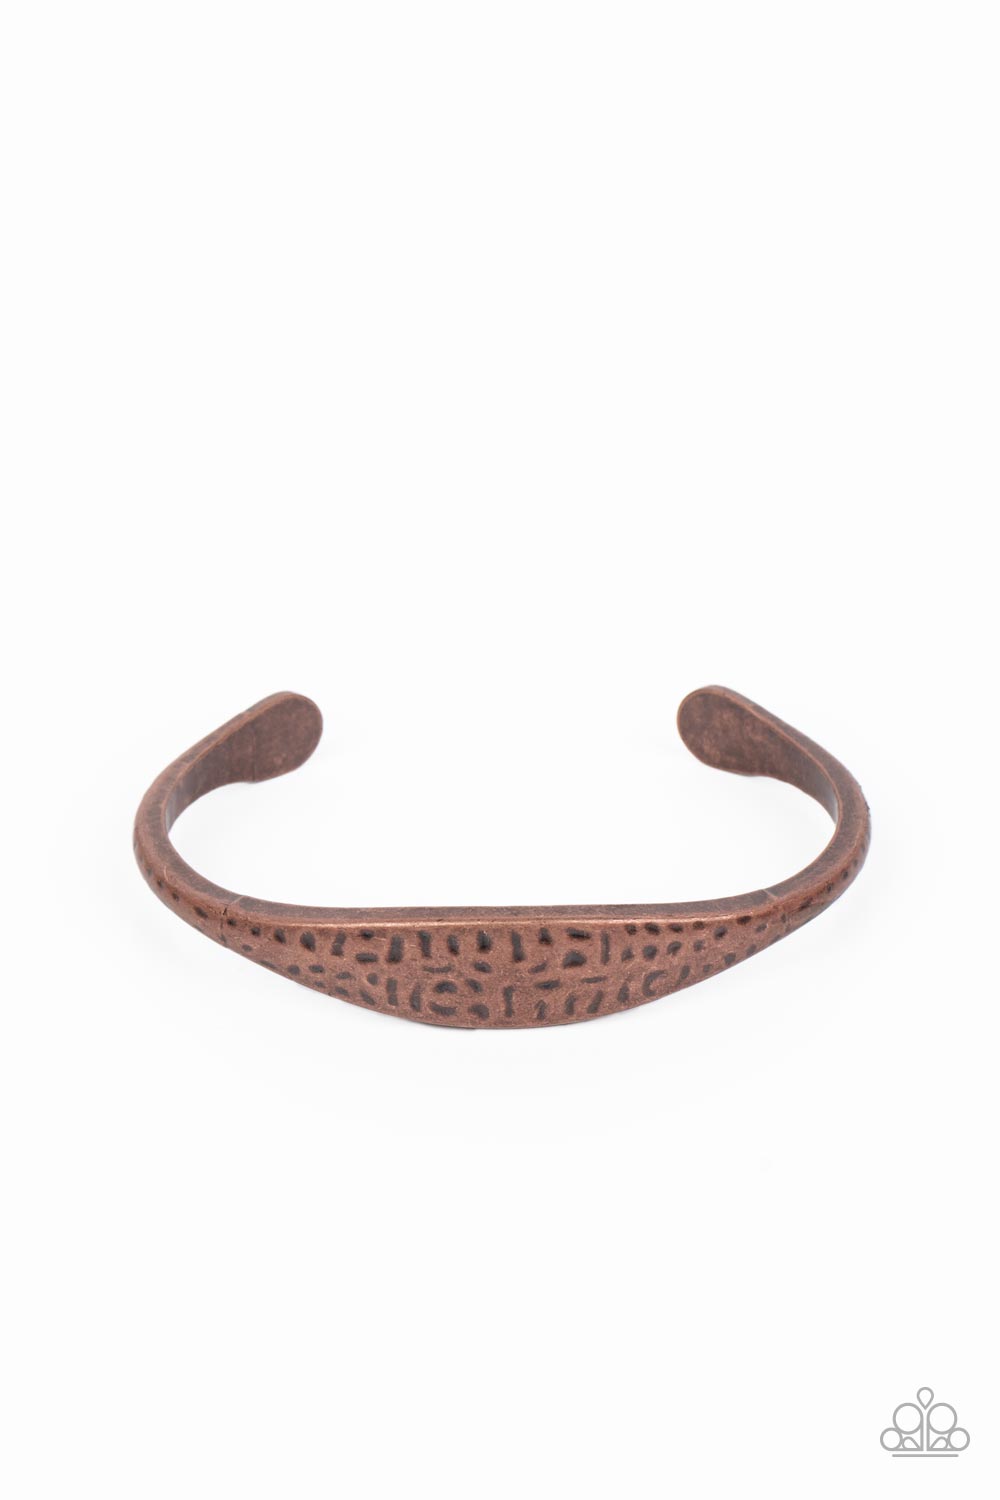 Ancient Accolade - Copper Bracelet